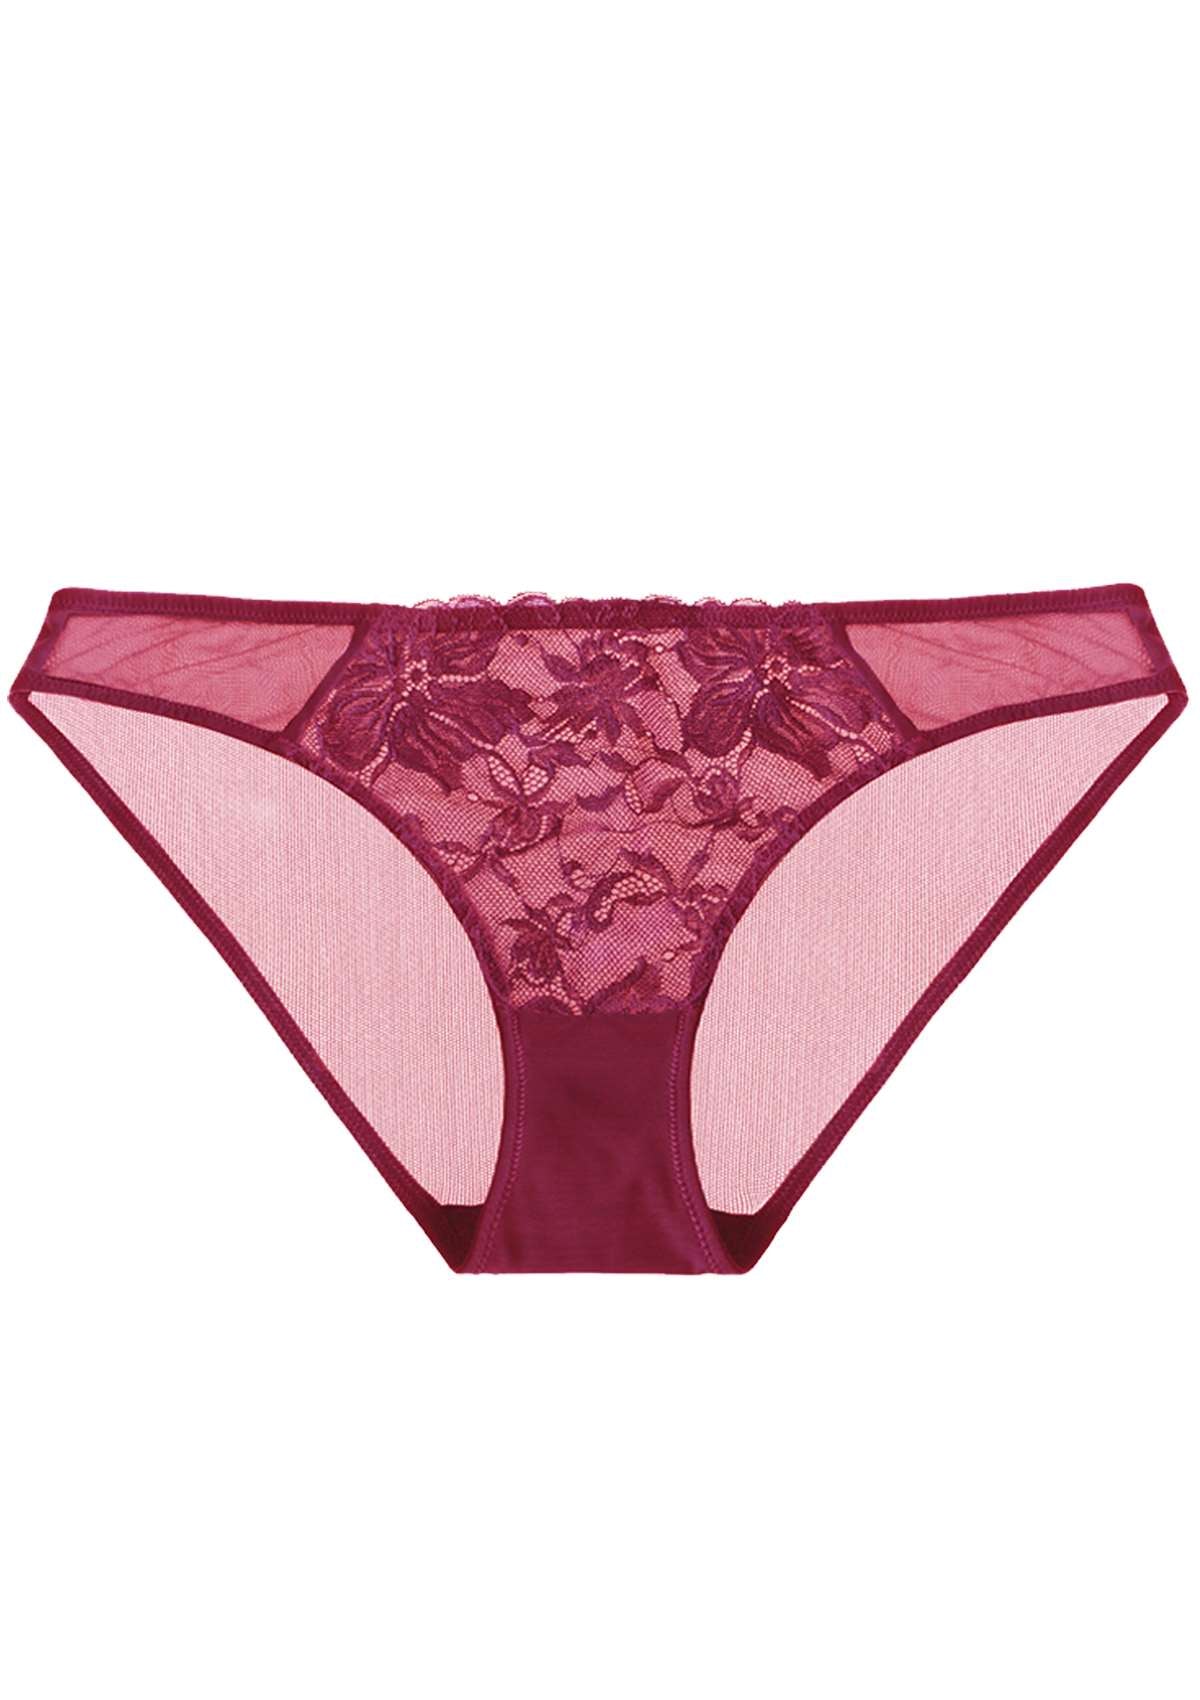 HSIA Pretty In Petals Mid-Rise Sexy Lace Everyday Underwear  - L / Bikini / Red